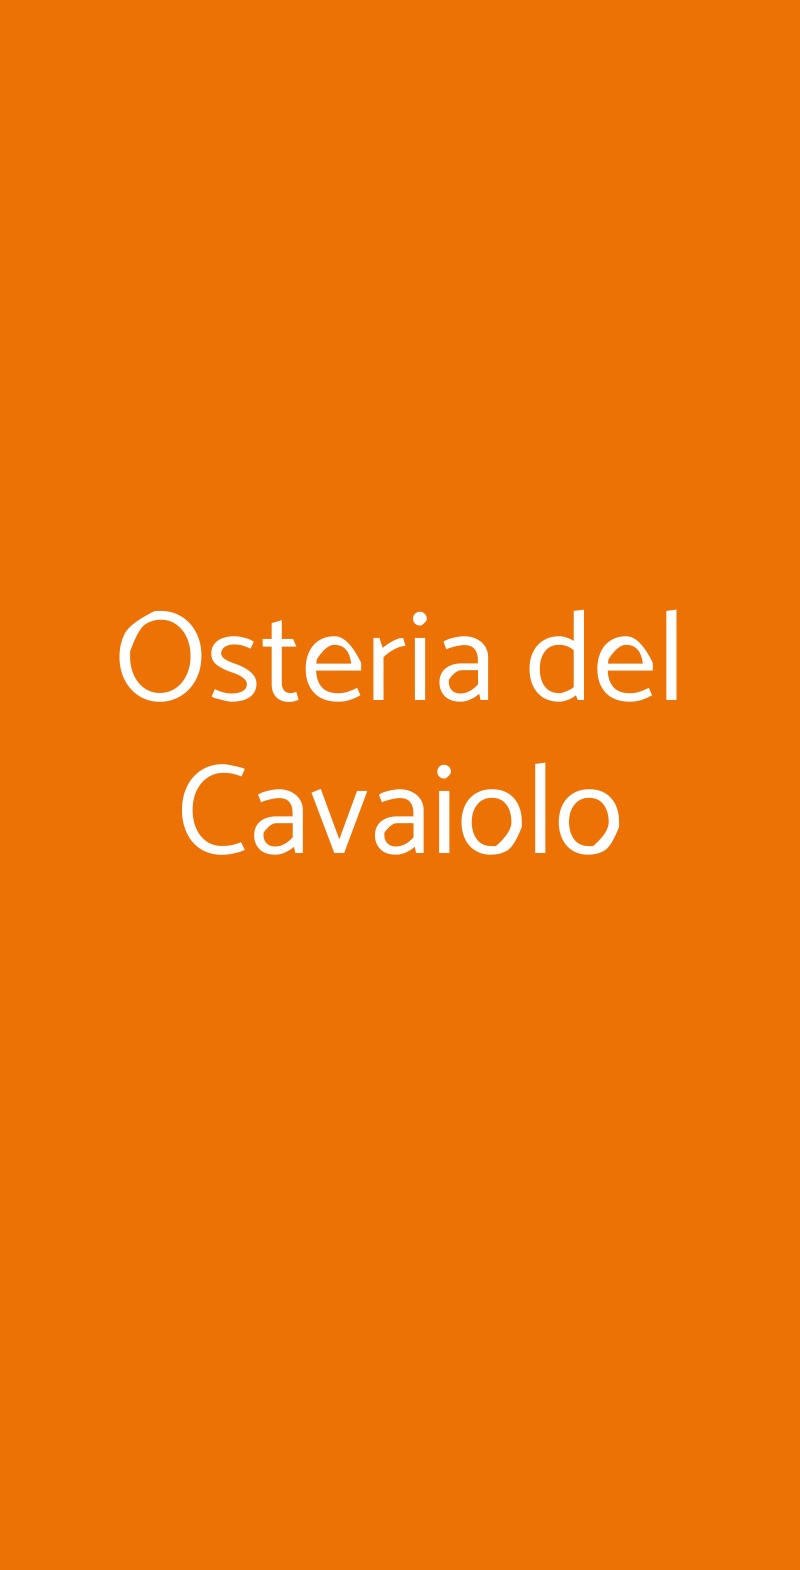 Osteria del Cavaiolo Castellina Marittima menù 1 pagina